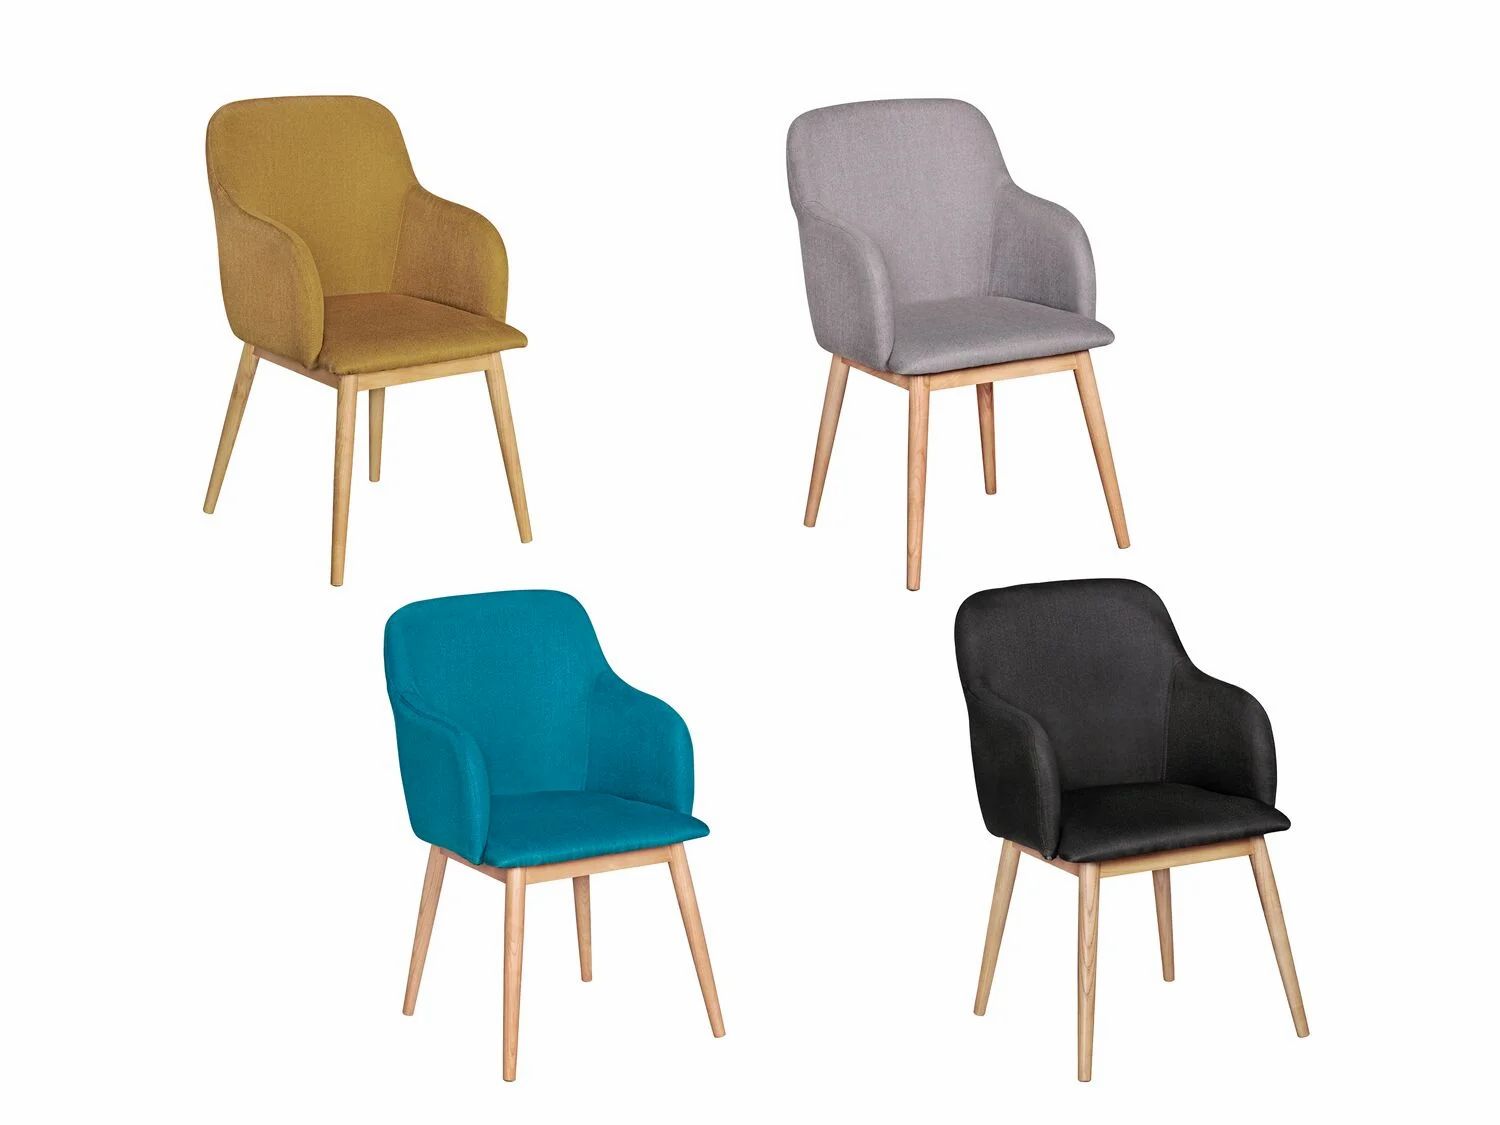 Puedes elegir las sillas en cuatro colores